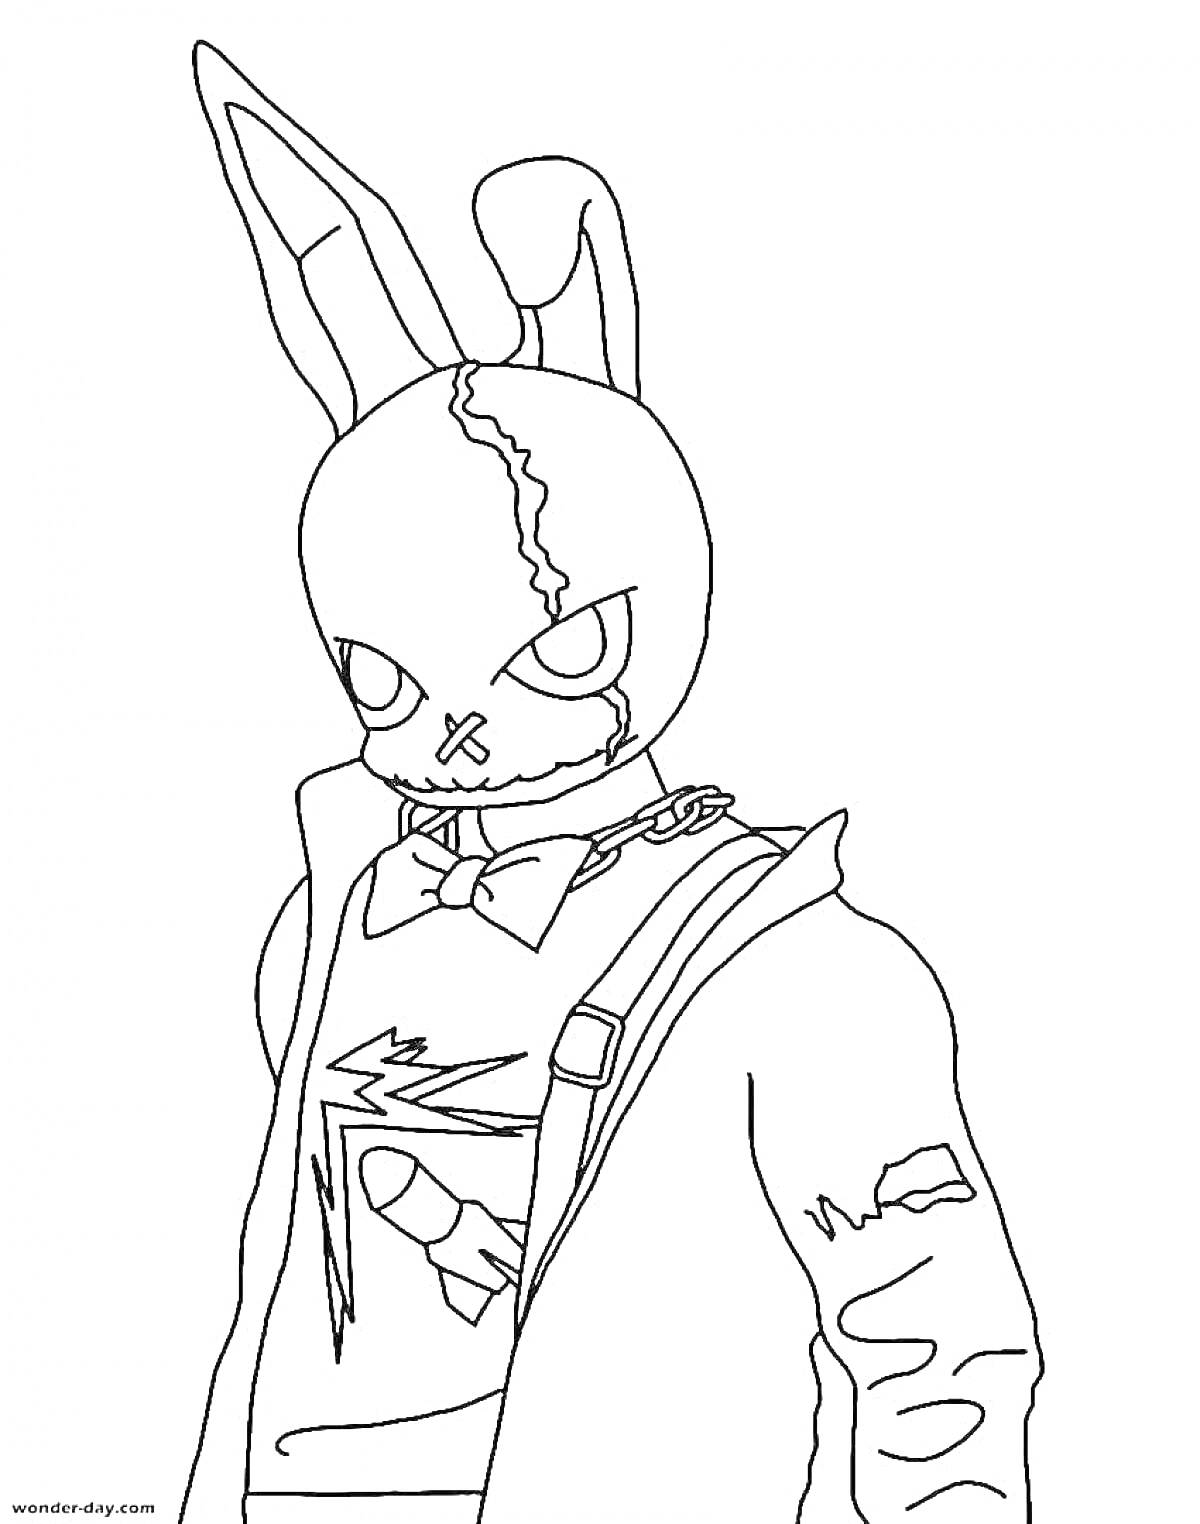 Воин в маске кролика с ошейником и трещинами, надетой курткой, рубашкой с рисунком ракеты.